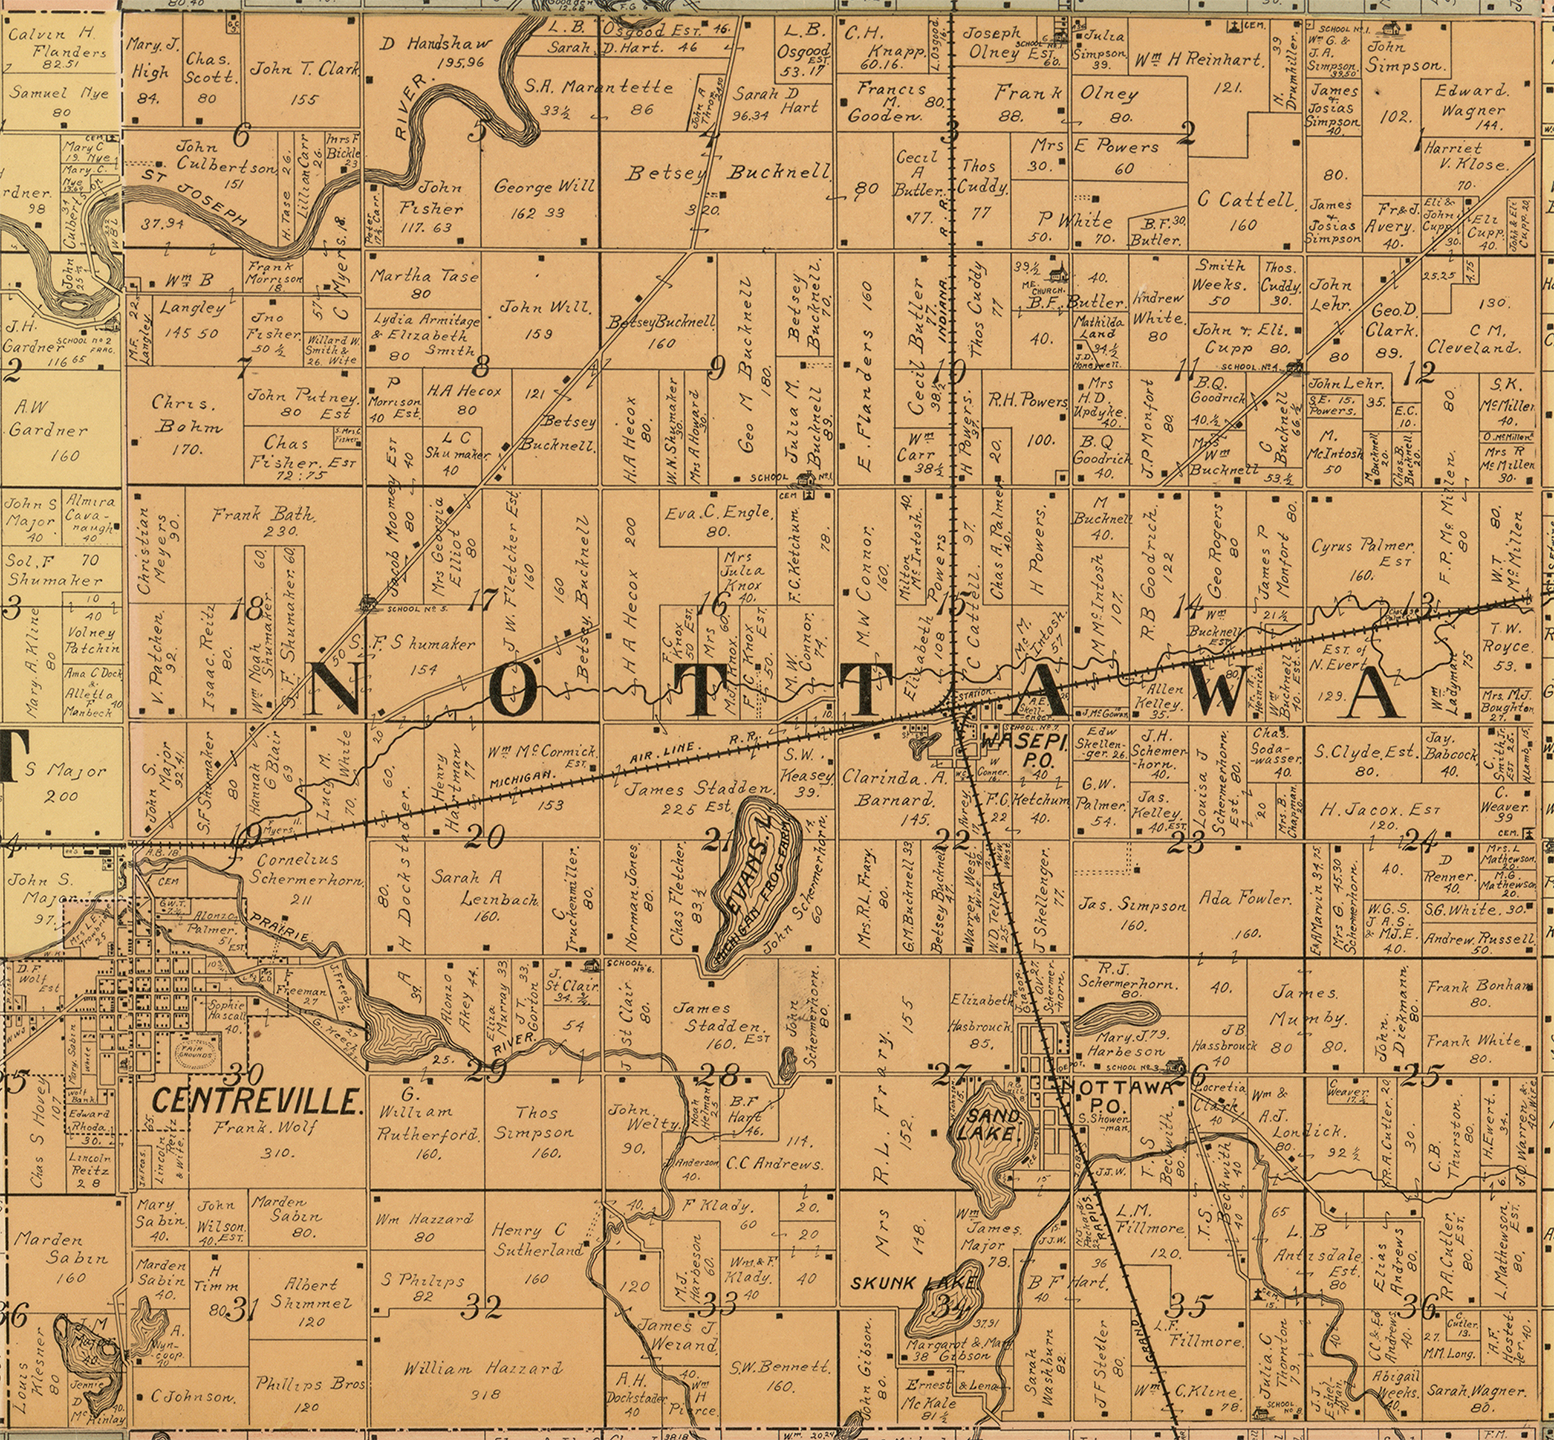 1897 Nottawa Township Michigan landownership map